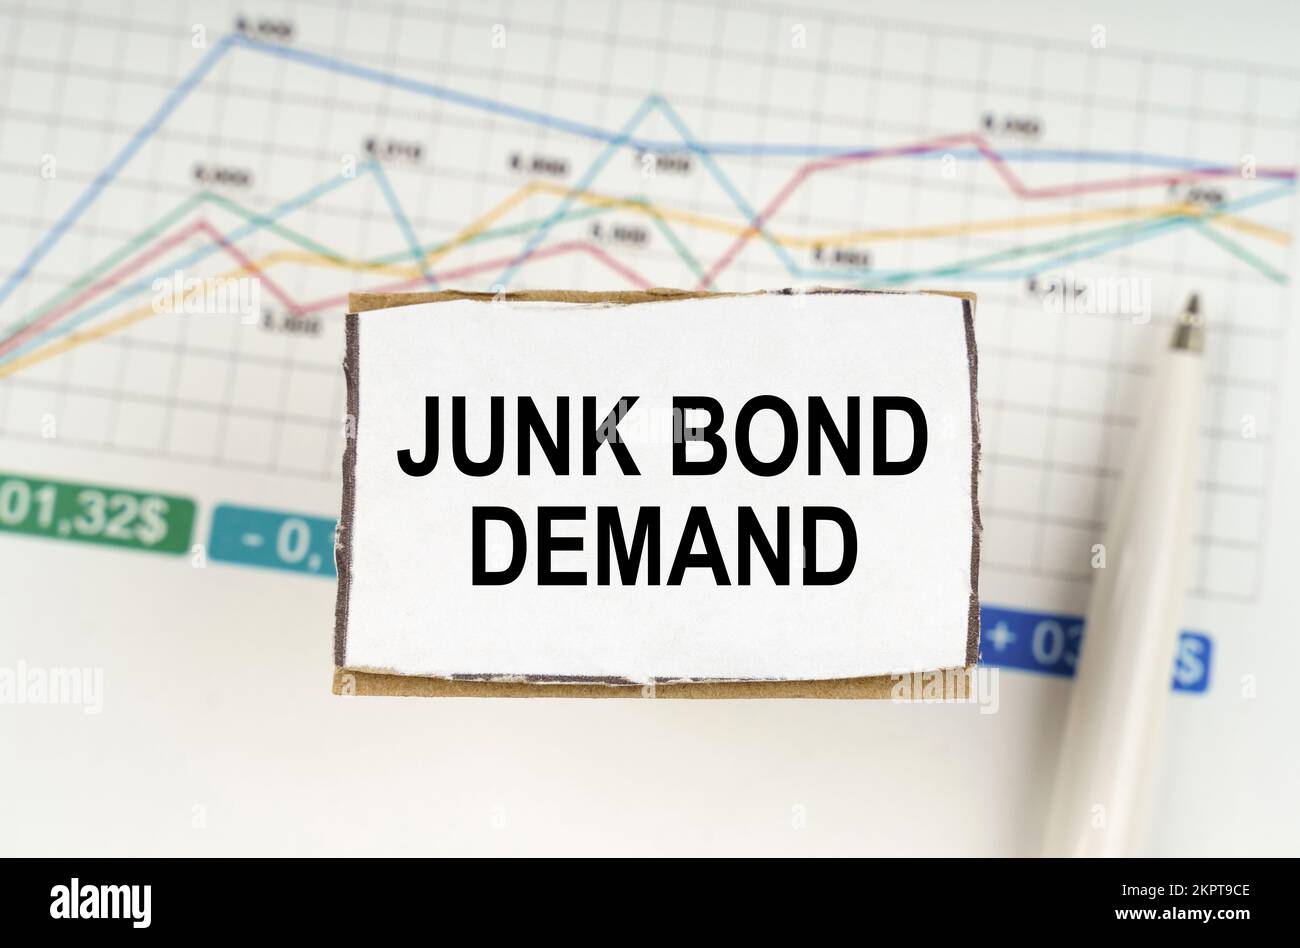 Geschäftskonzept. Vor dem Hintergrund von Geschäftsgrafiken und Stiften, ein Schild mit der Aufschrift "JUNK BOND DEMAND" Stockfoto